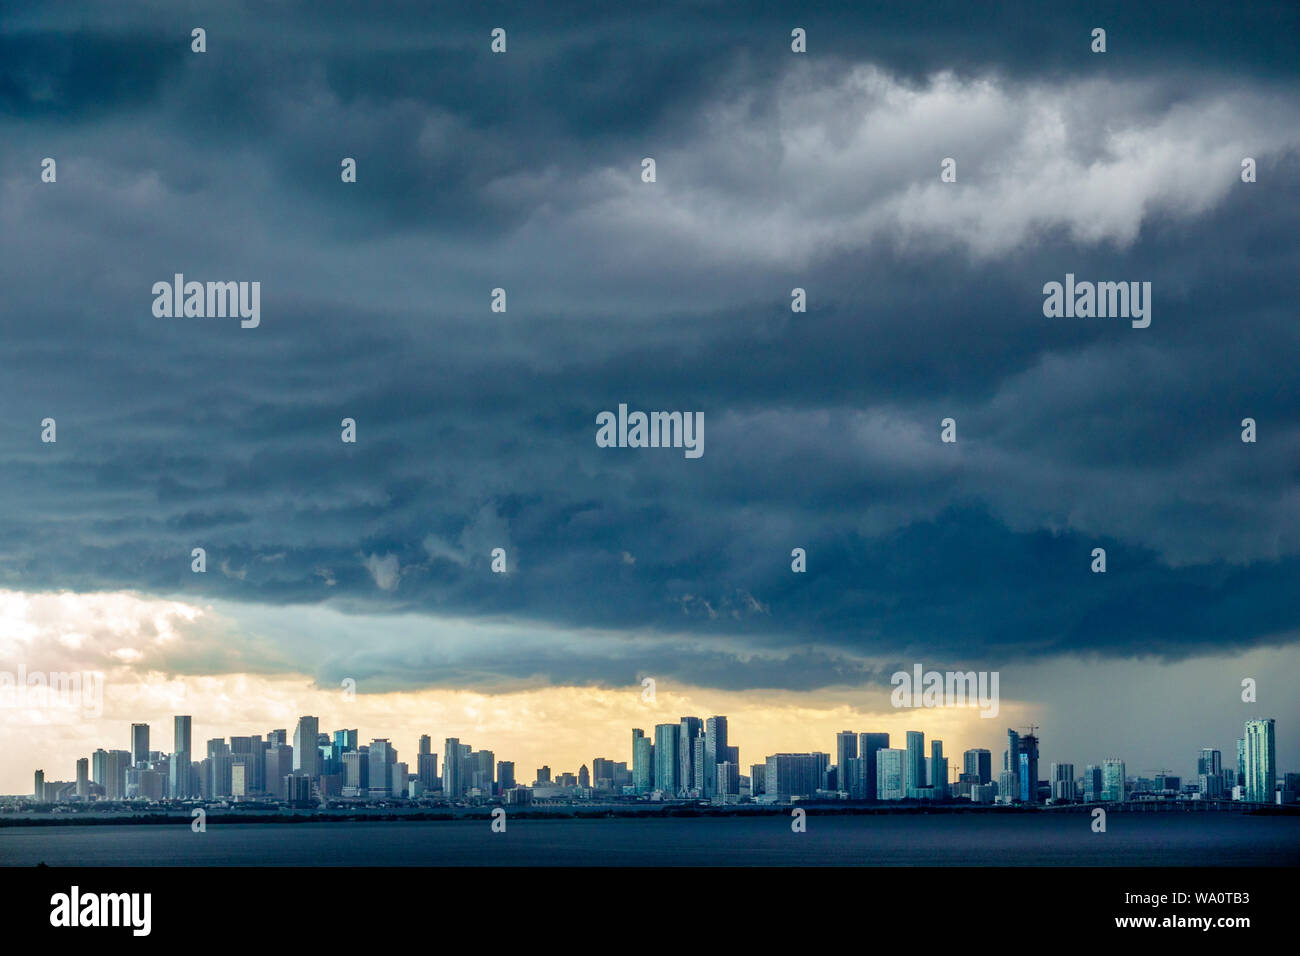 Miami Beach Florida, dunkle Wolken Wetter Himmel Sturm Wolken sammeln, regen, Skyline der Stadt, Biscayne Bay Wasser, Besucher reisen Reise Tour Tourismus Stockfoto